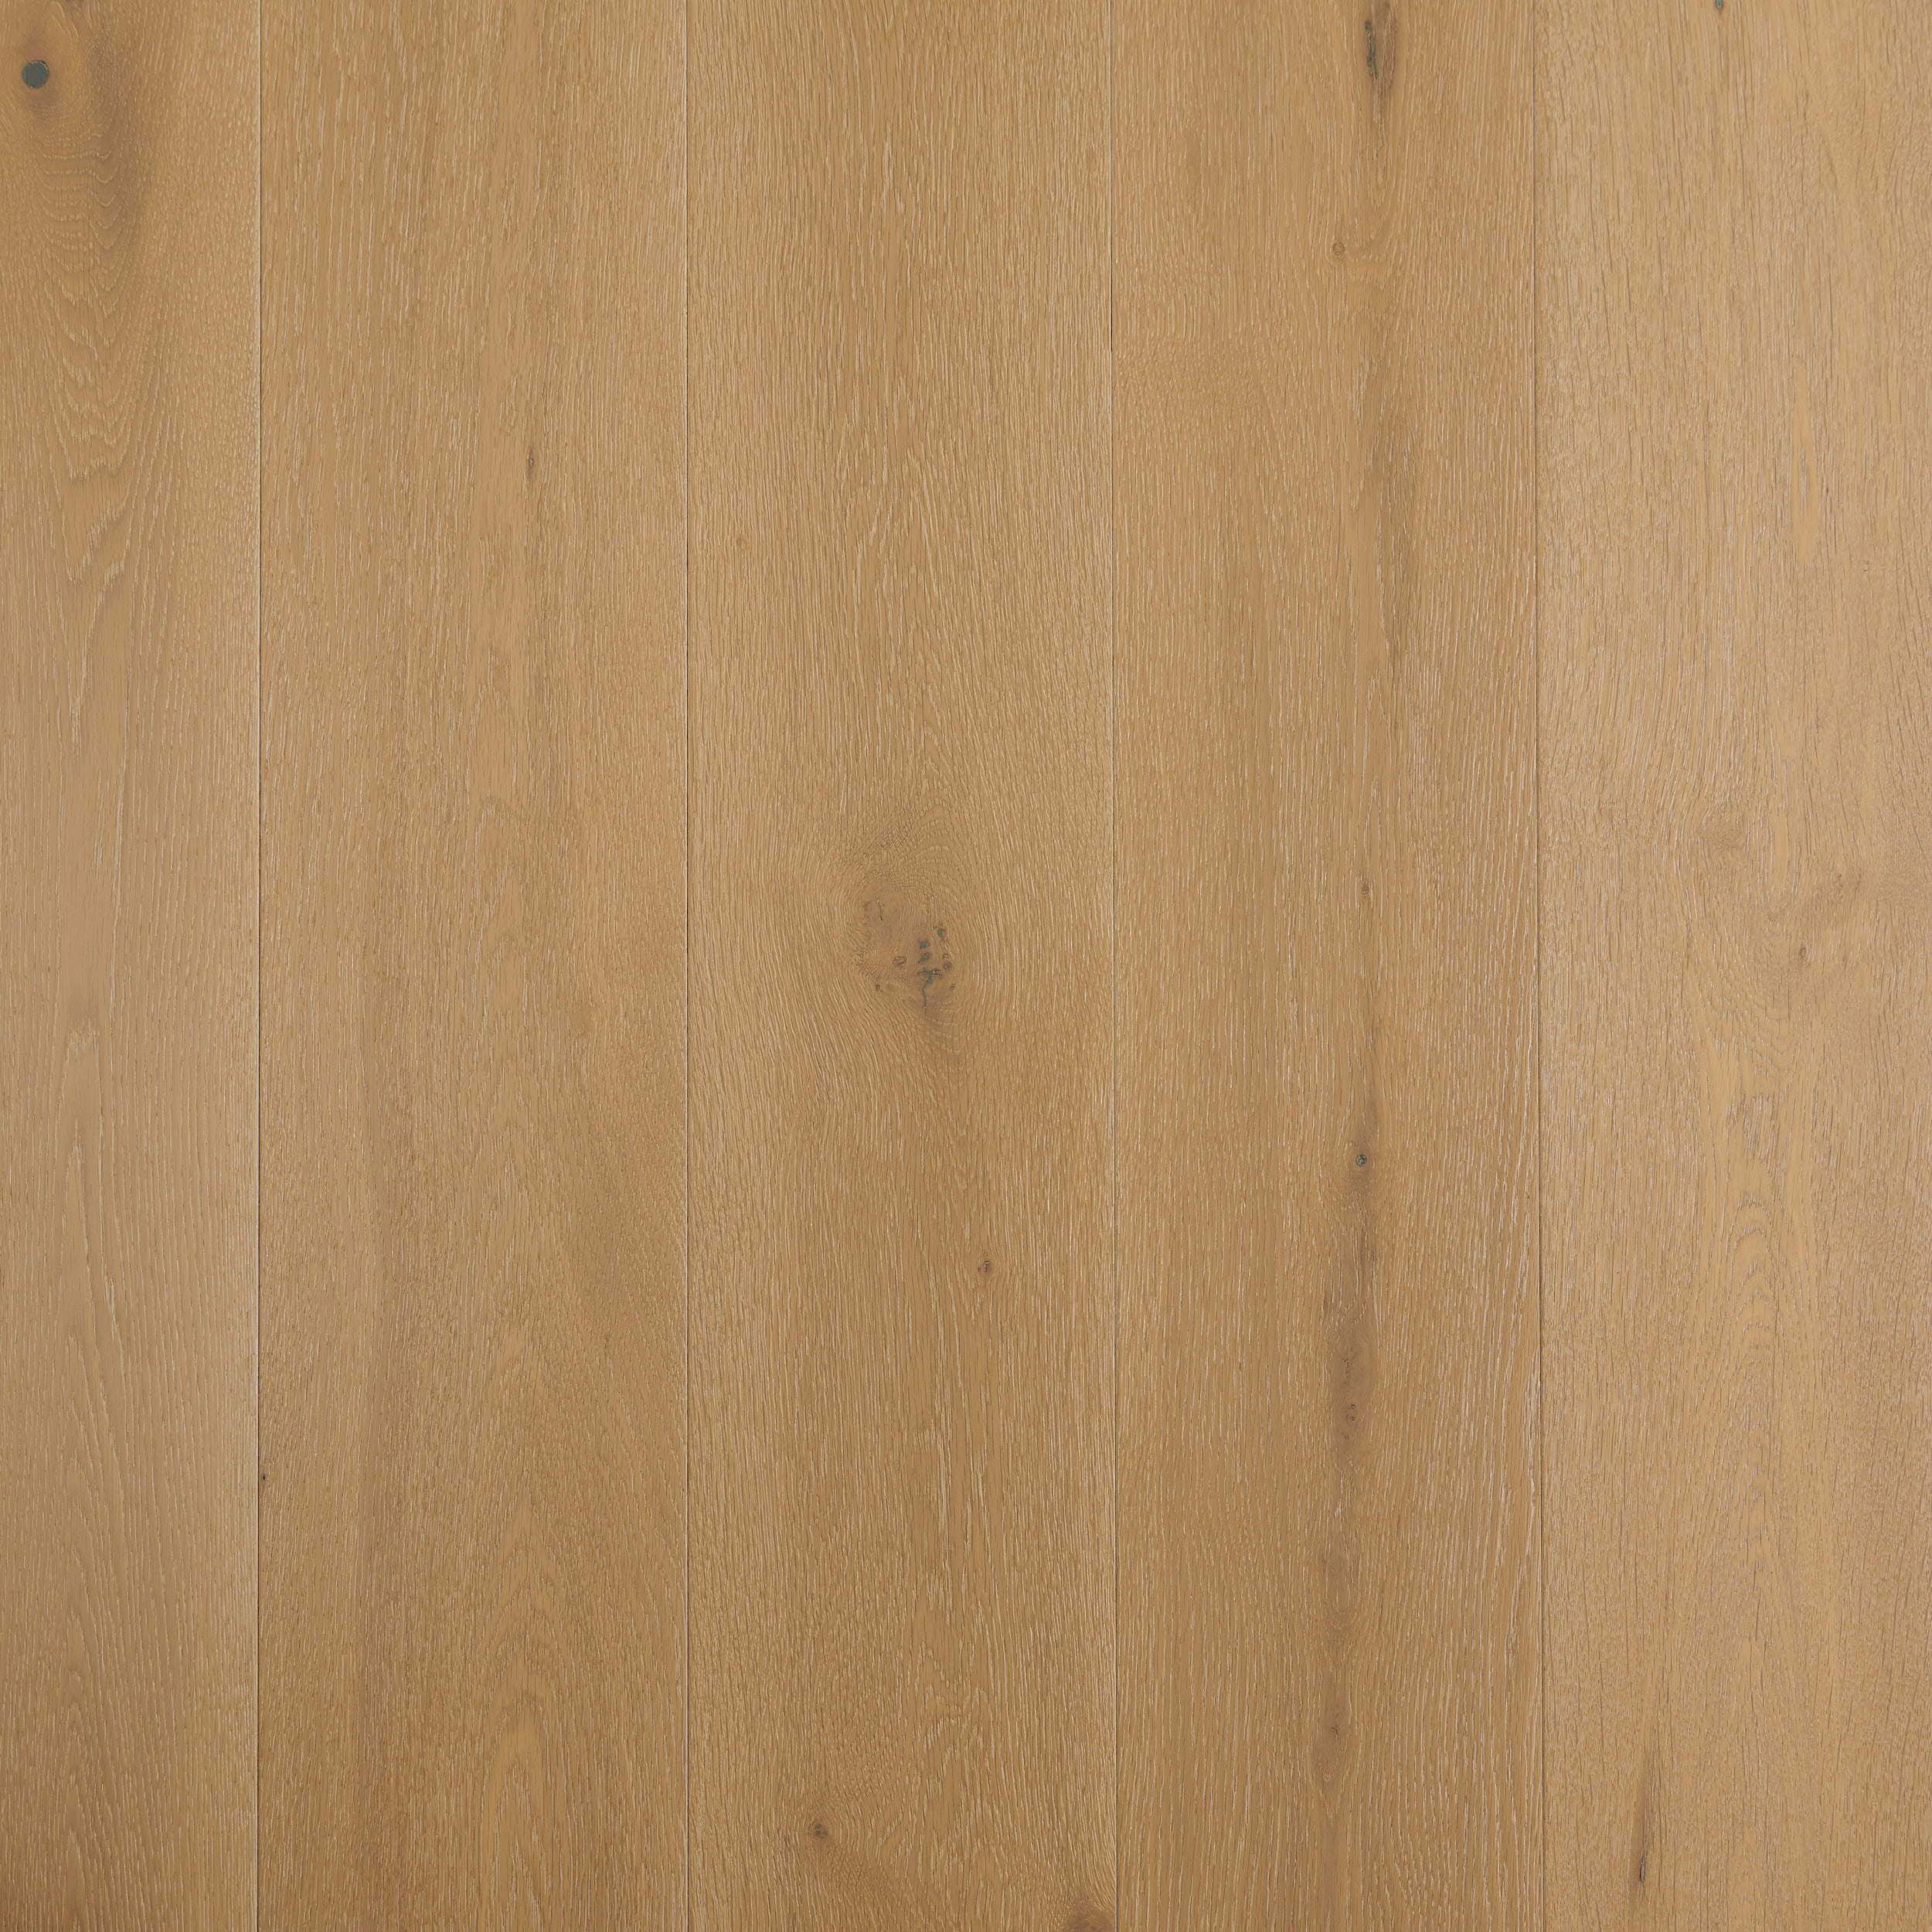 Fume timber flooring